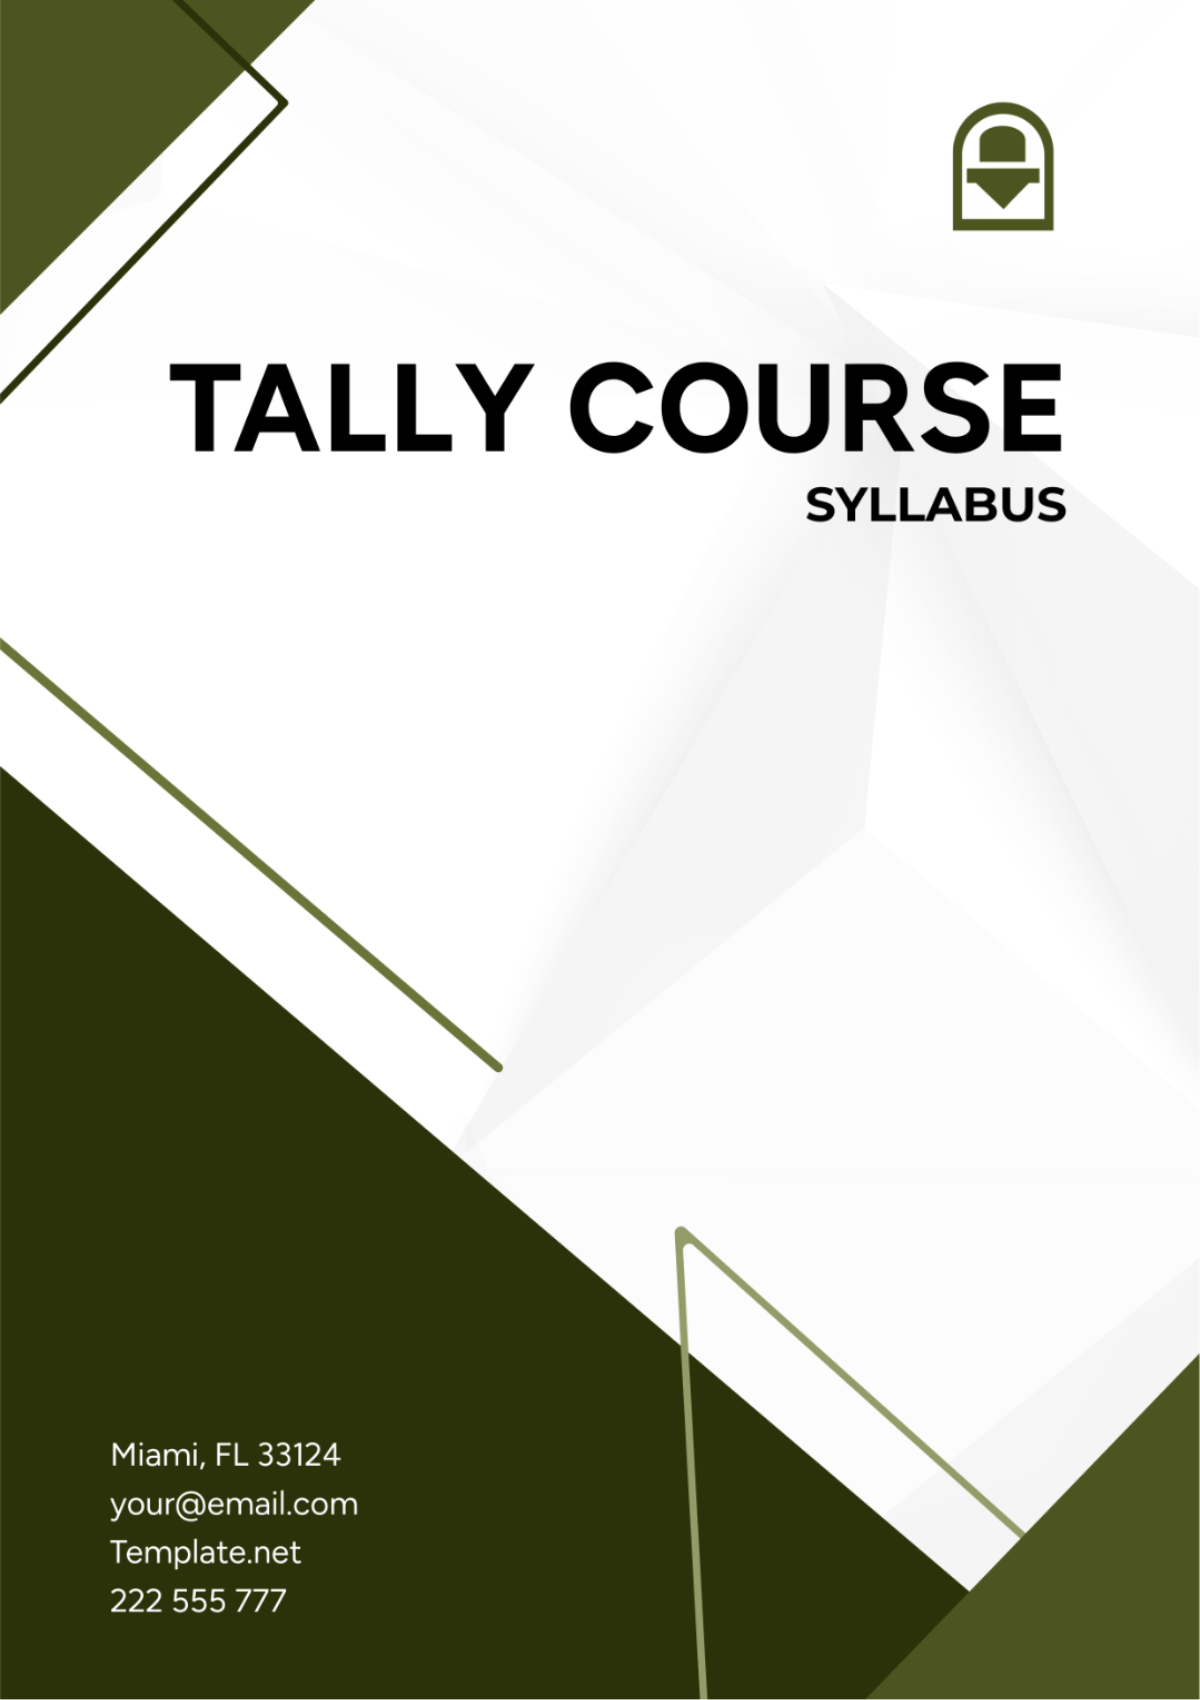 Tally Course Syllabus Template